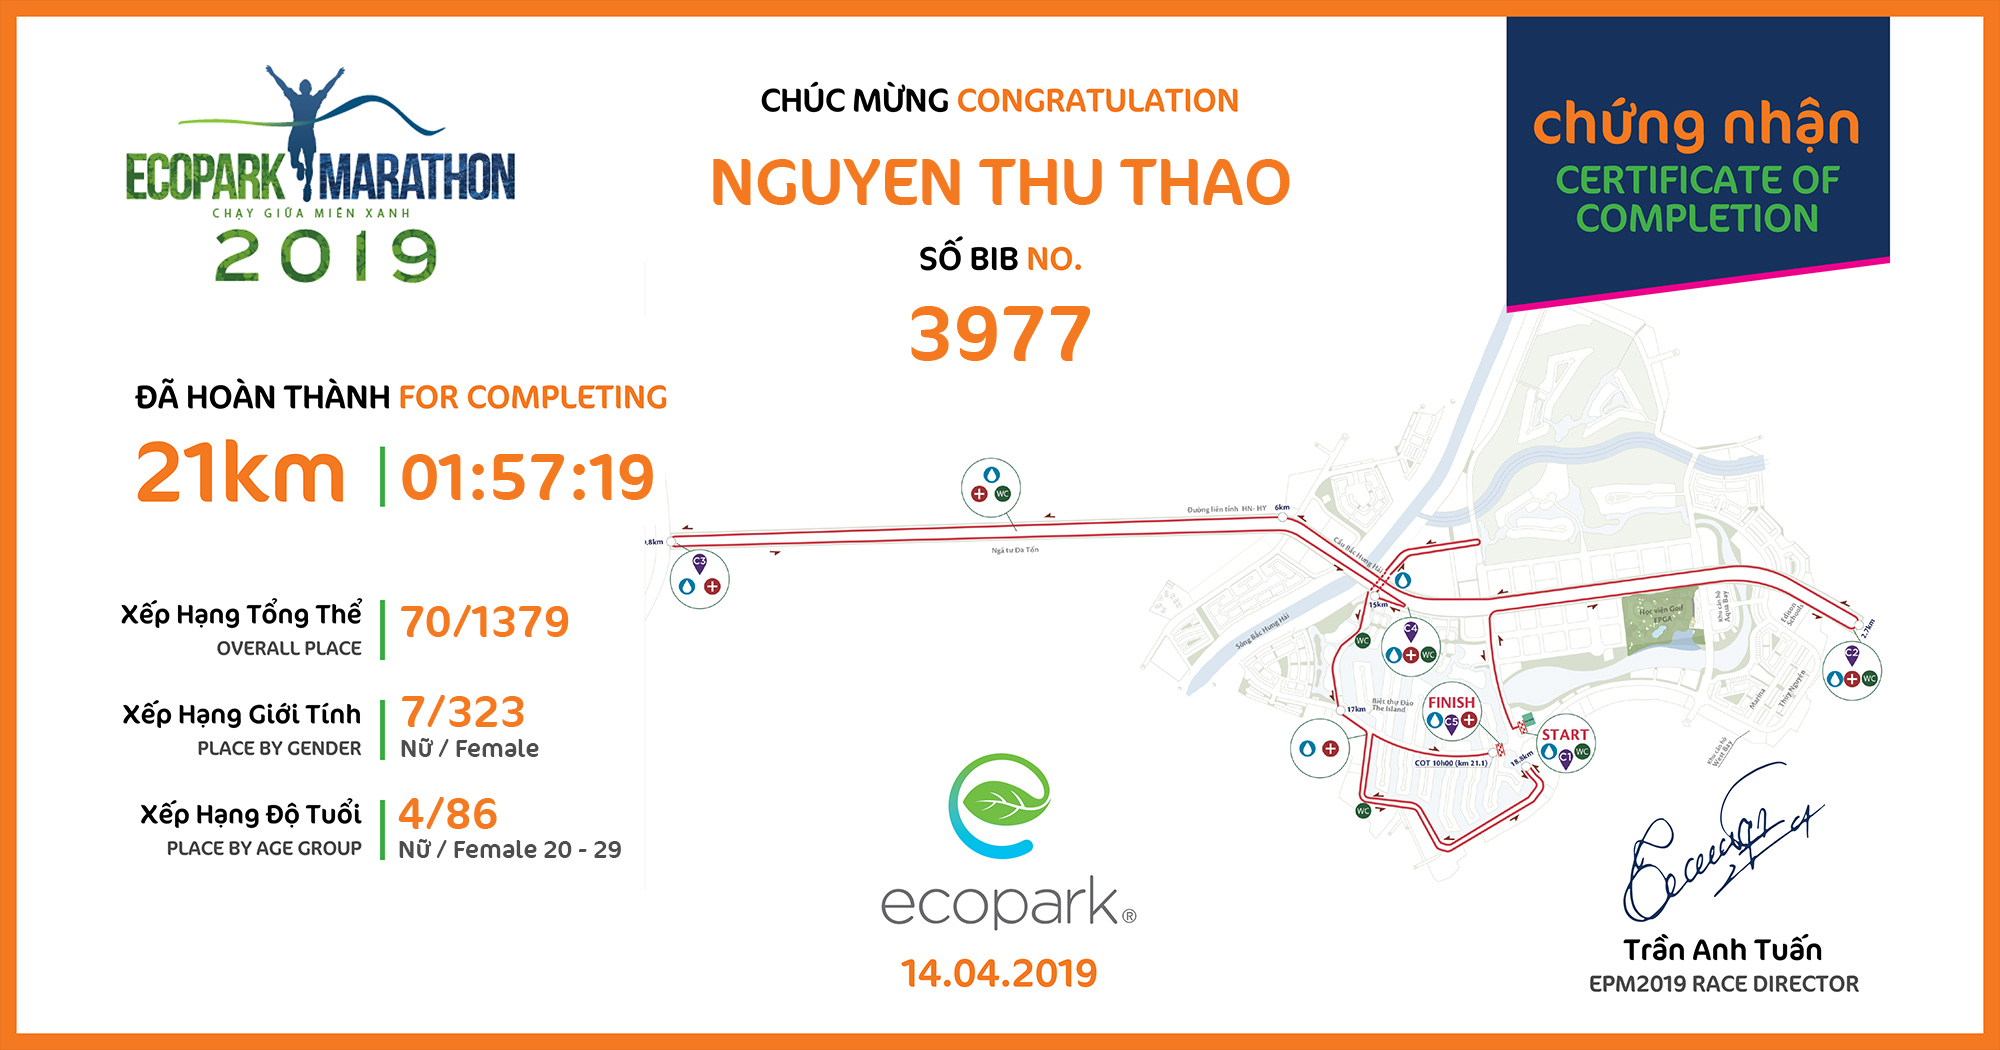 3977 - Nguyen Thu Thao